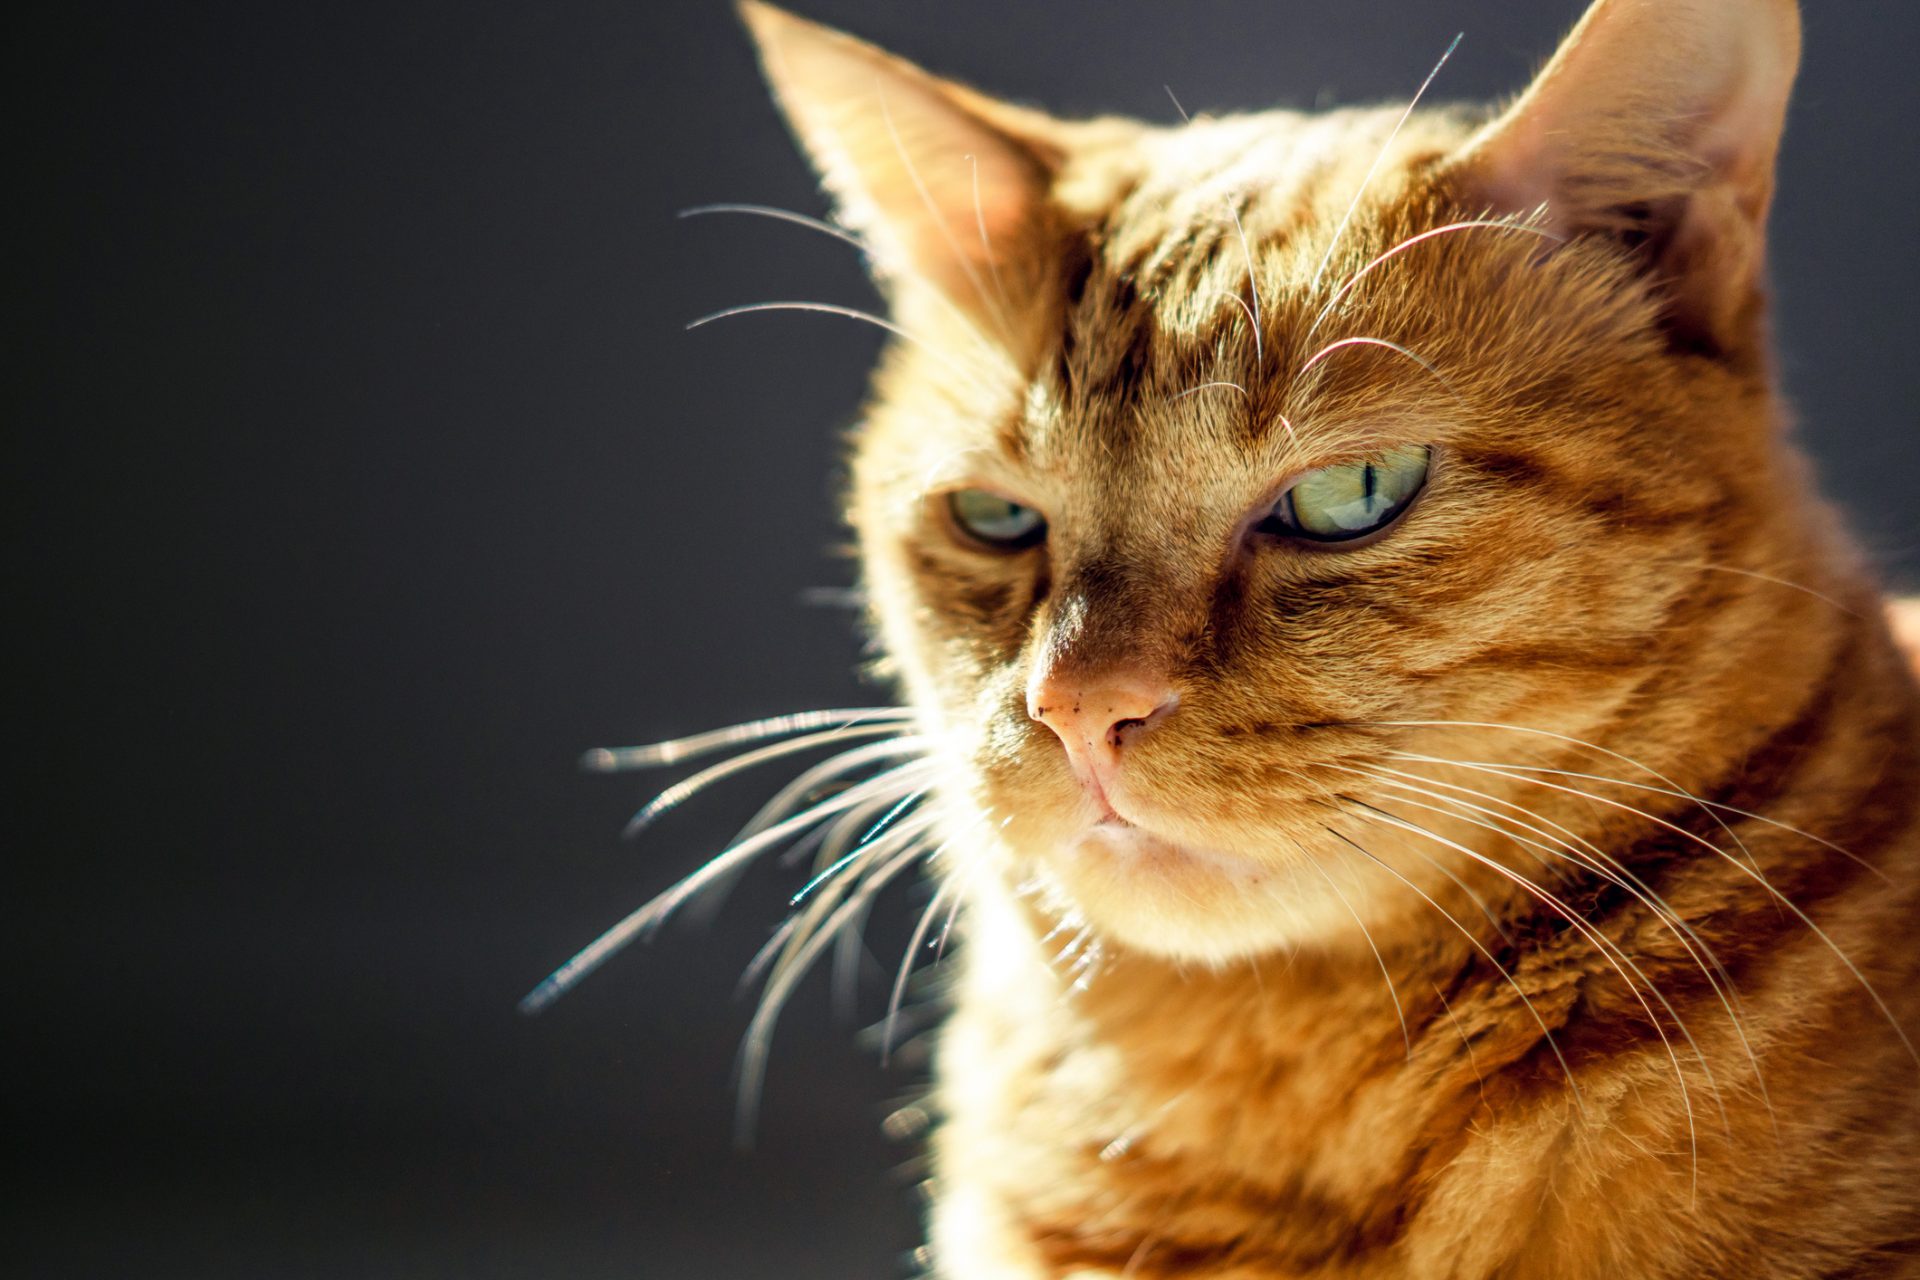 Könnten Katzen die perfekten Spione sein?